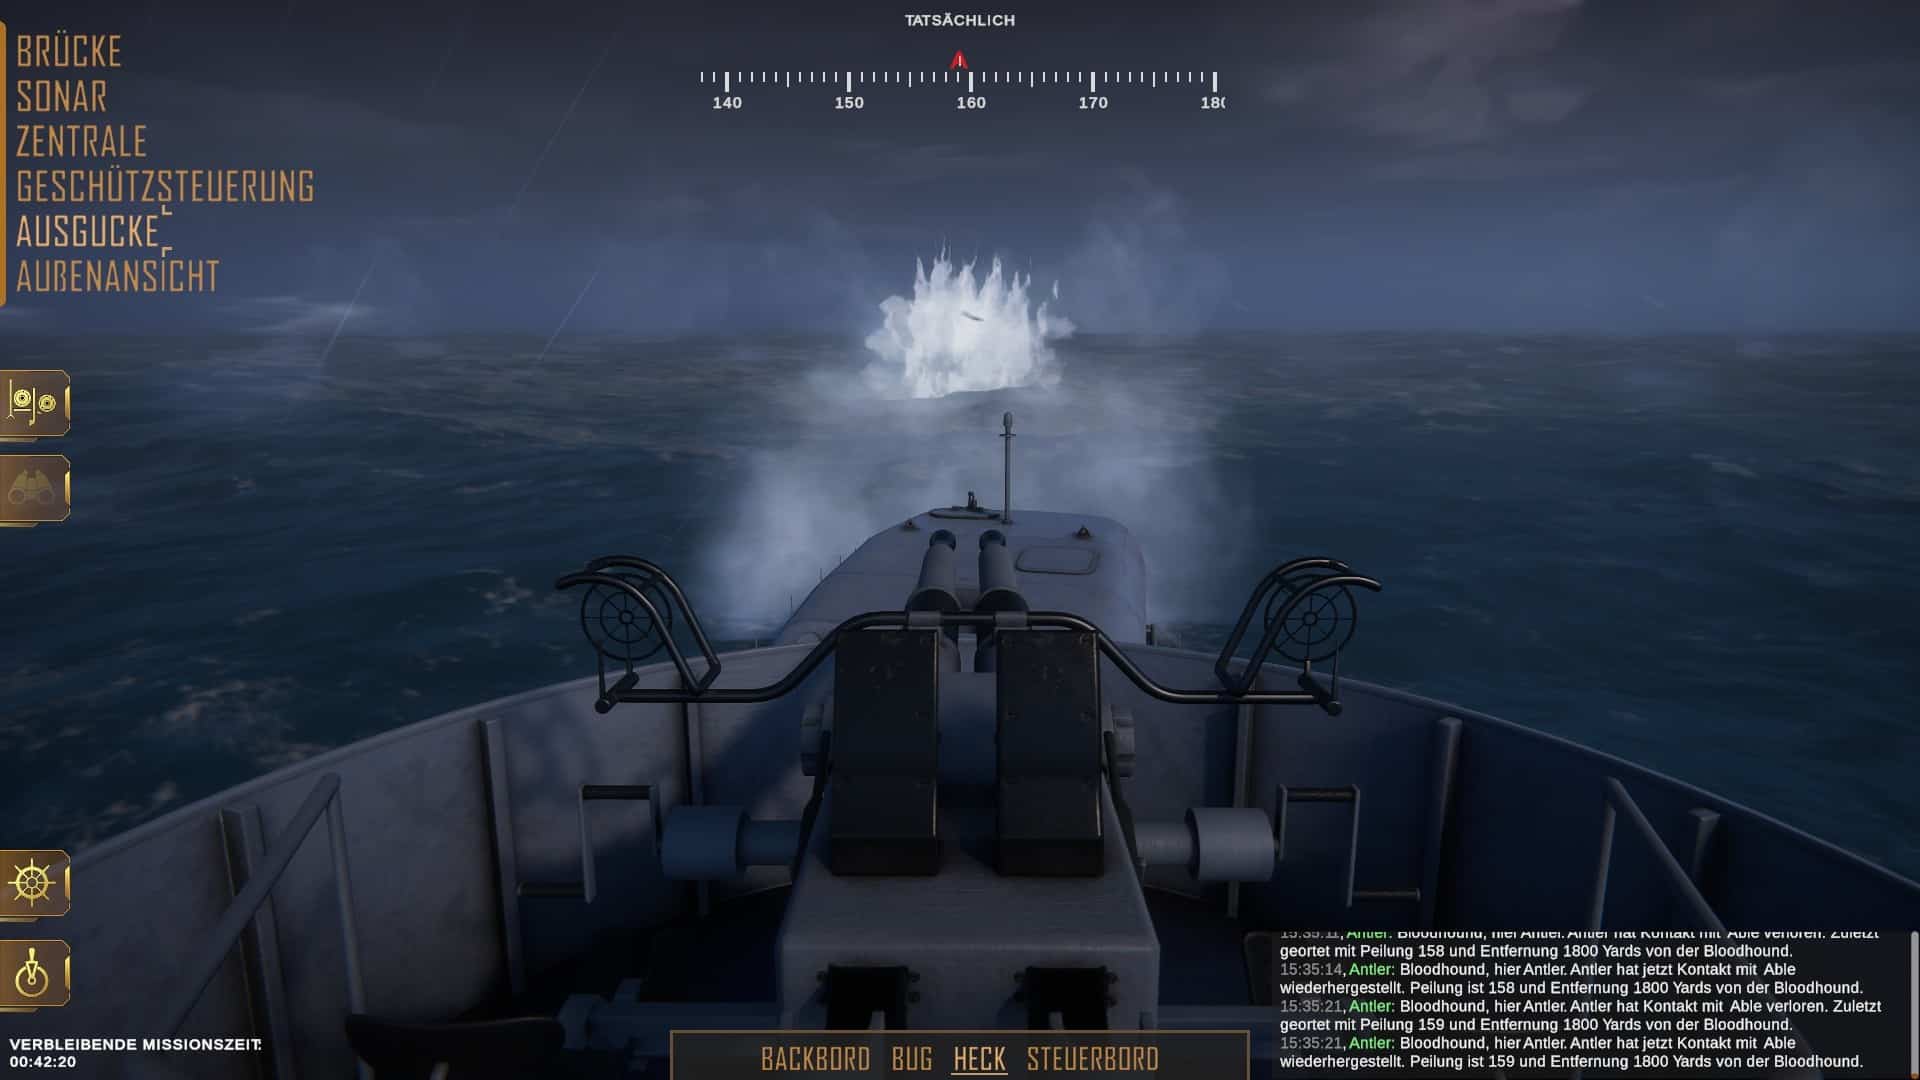 (Selama kapal U masih berada di atas air, kita dapat mencoba menghancurkannya dengan senapan di atas kapal.)